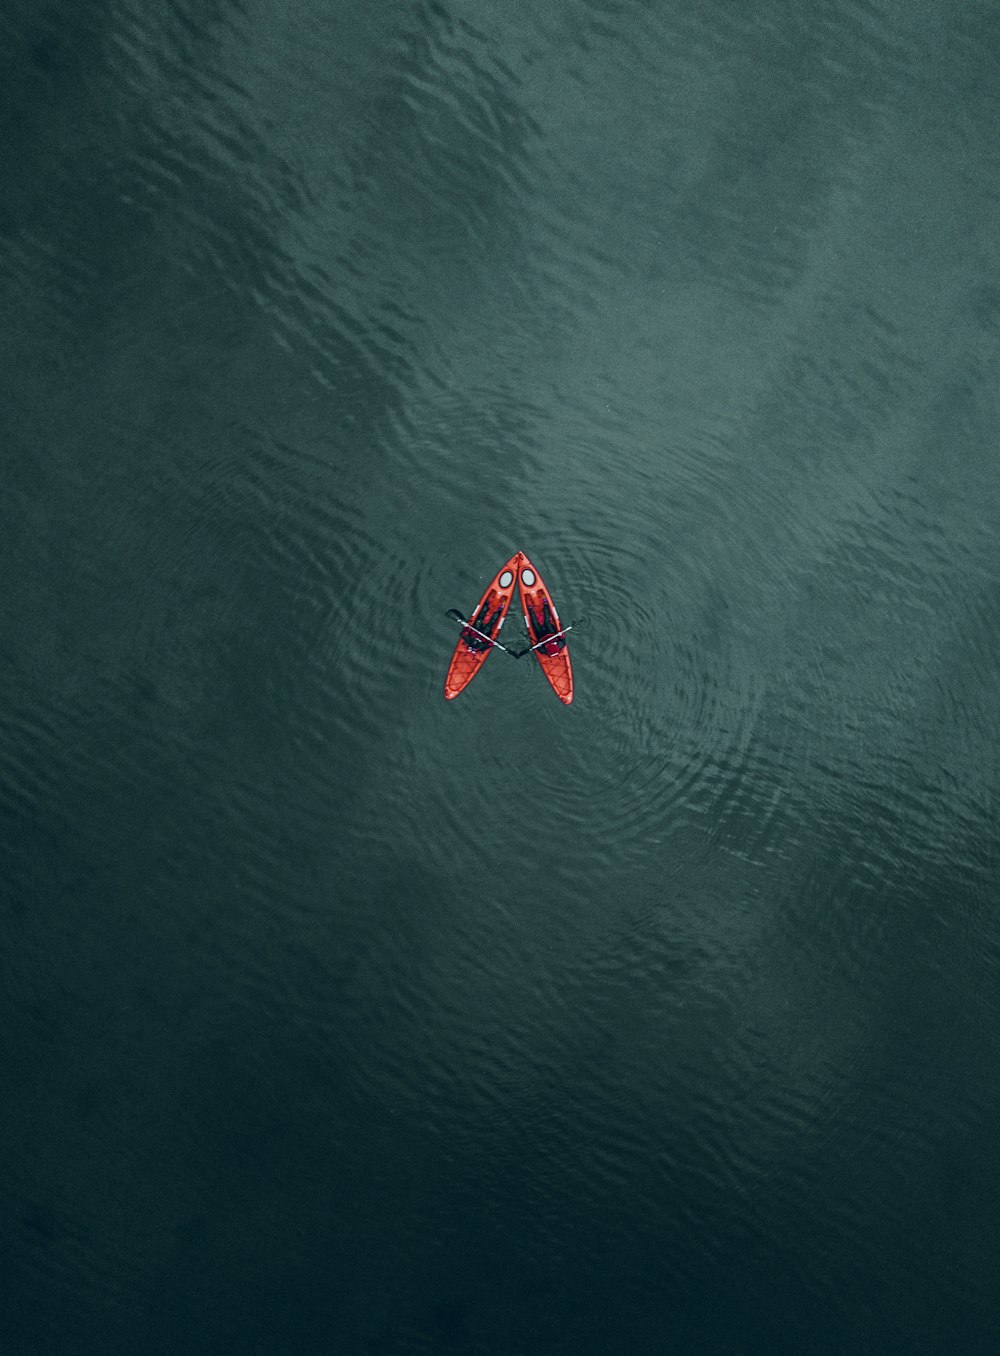 Una barca rossa e bianca sull'acqua